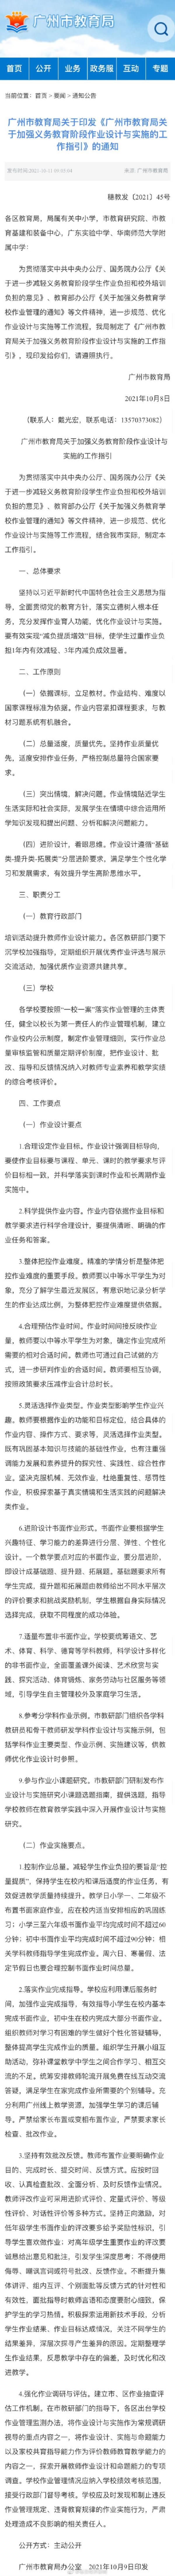 广州中学初三孩子作业几点做完_广州中学生作业时间规定